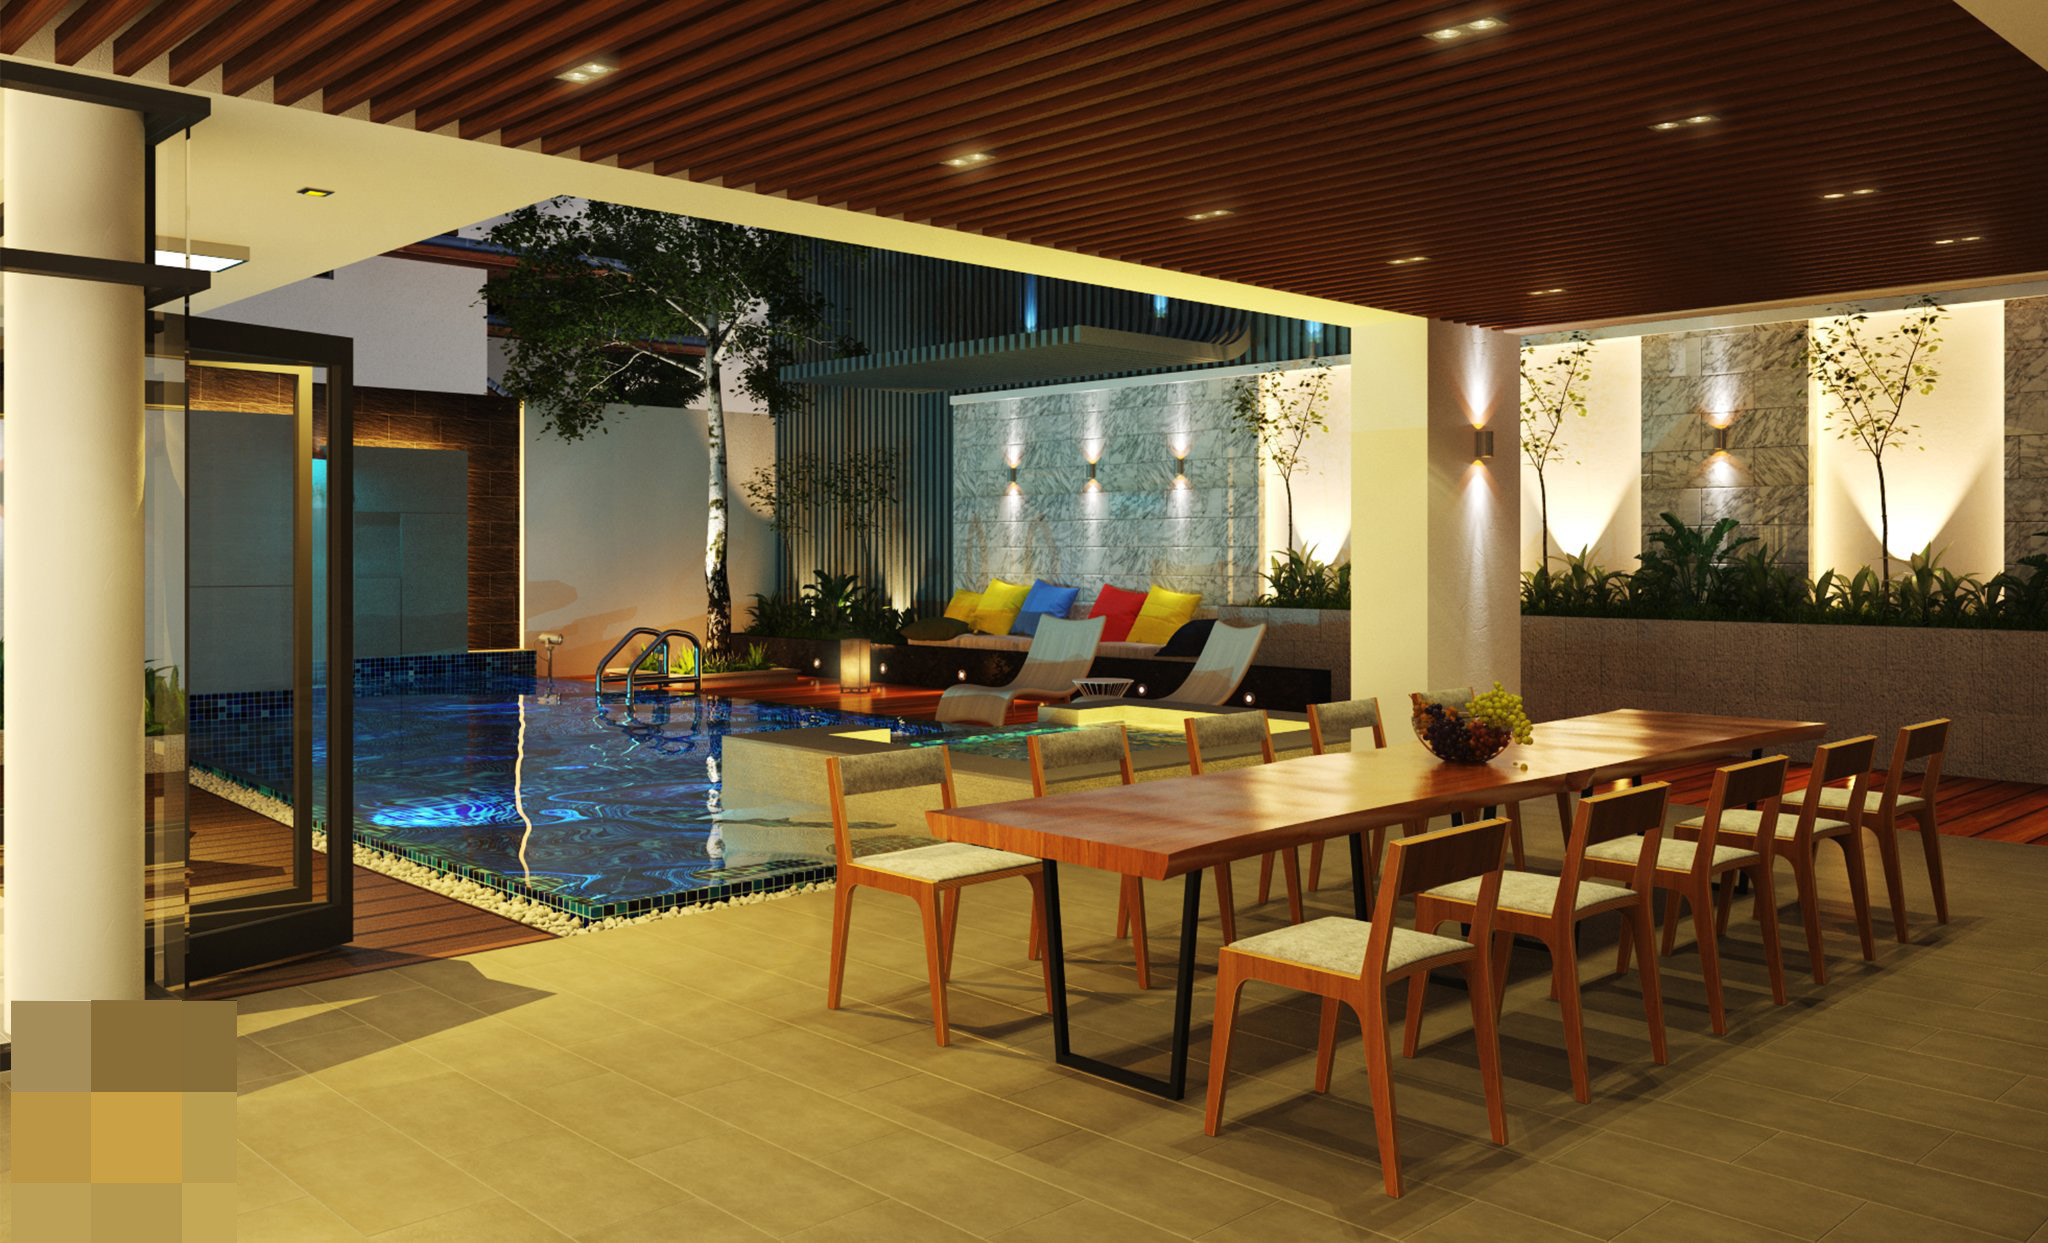 villa 828 - Villa hút hồn với không gian mở, sử dụng hồ bơi và bể sục tiện nghi